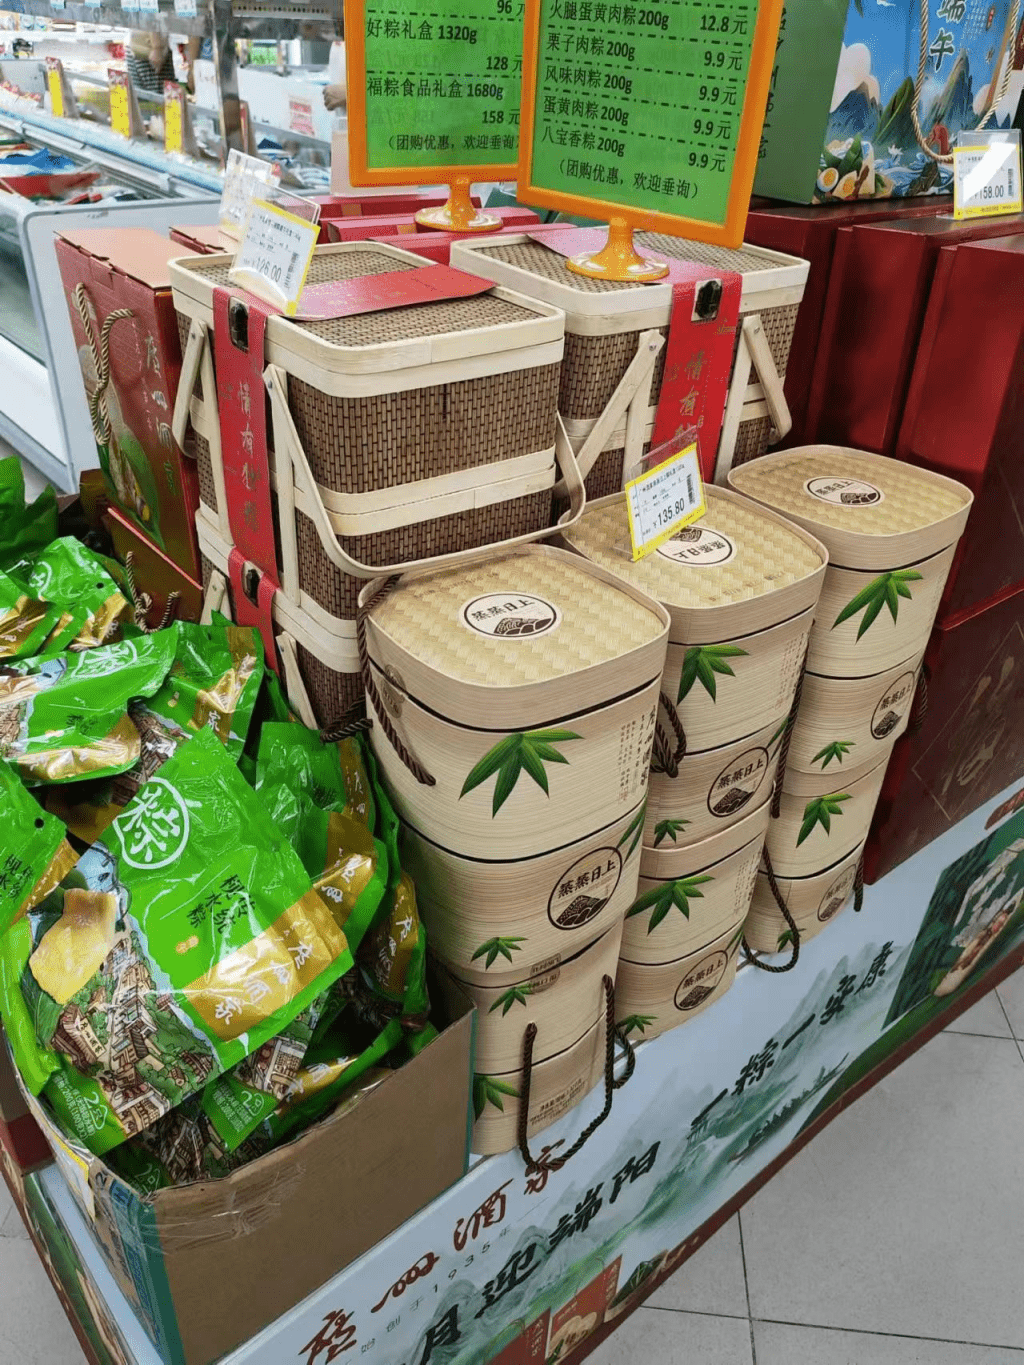 广州酒家一款竹篮包装的产品，尤其受团购欢迎。